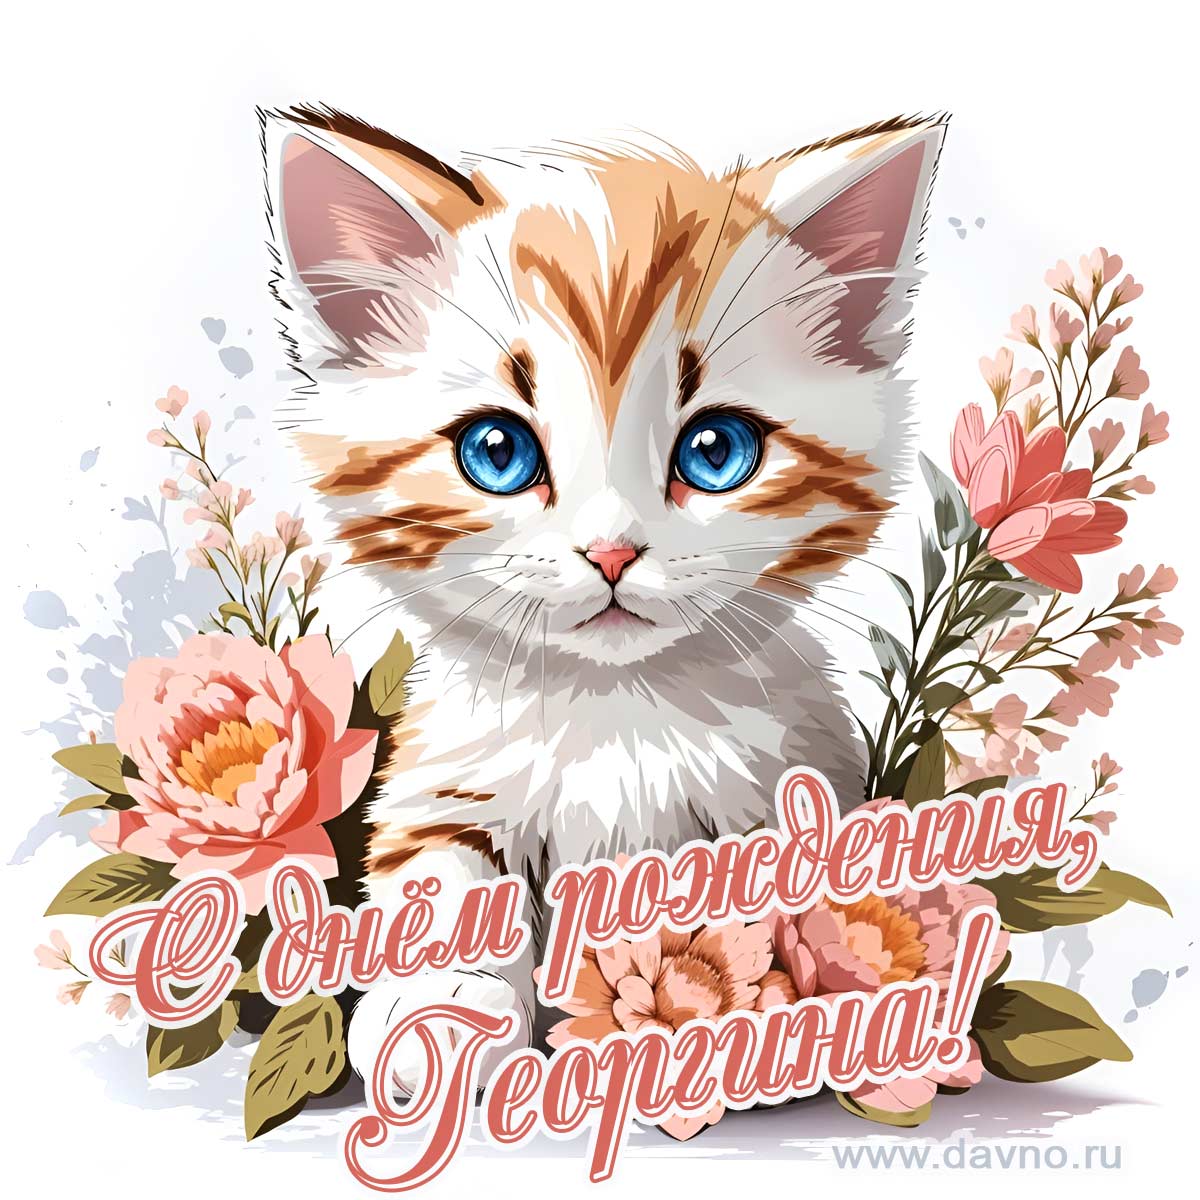 Новая рисованная поздравительная открытка для Георгины с котёнком